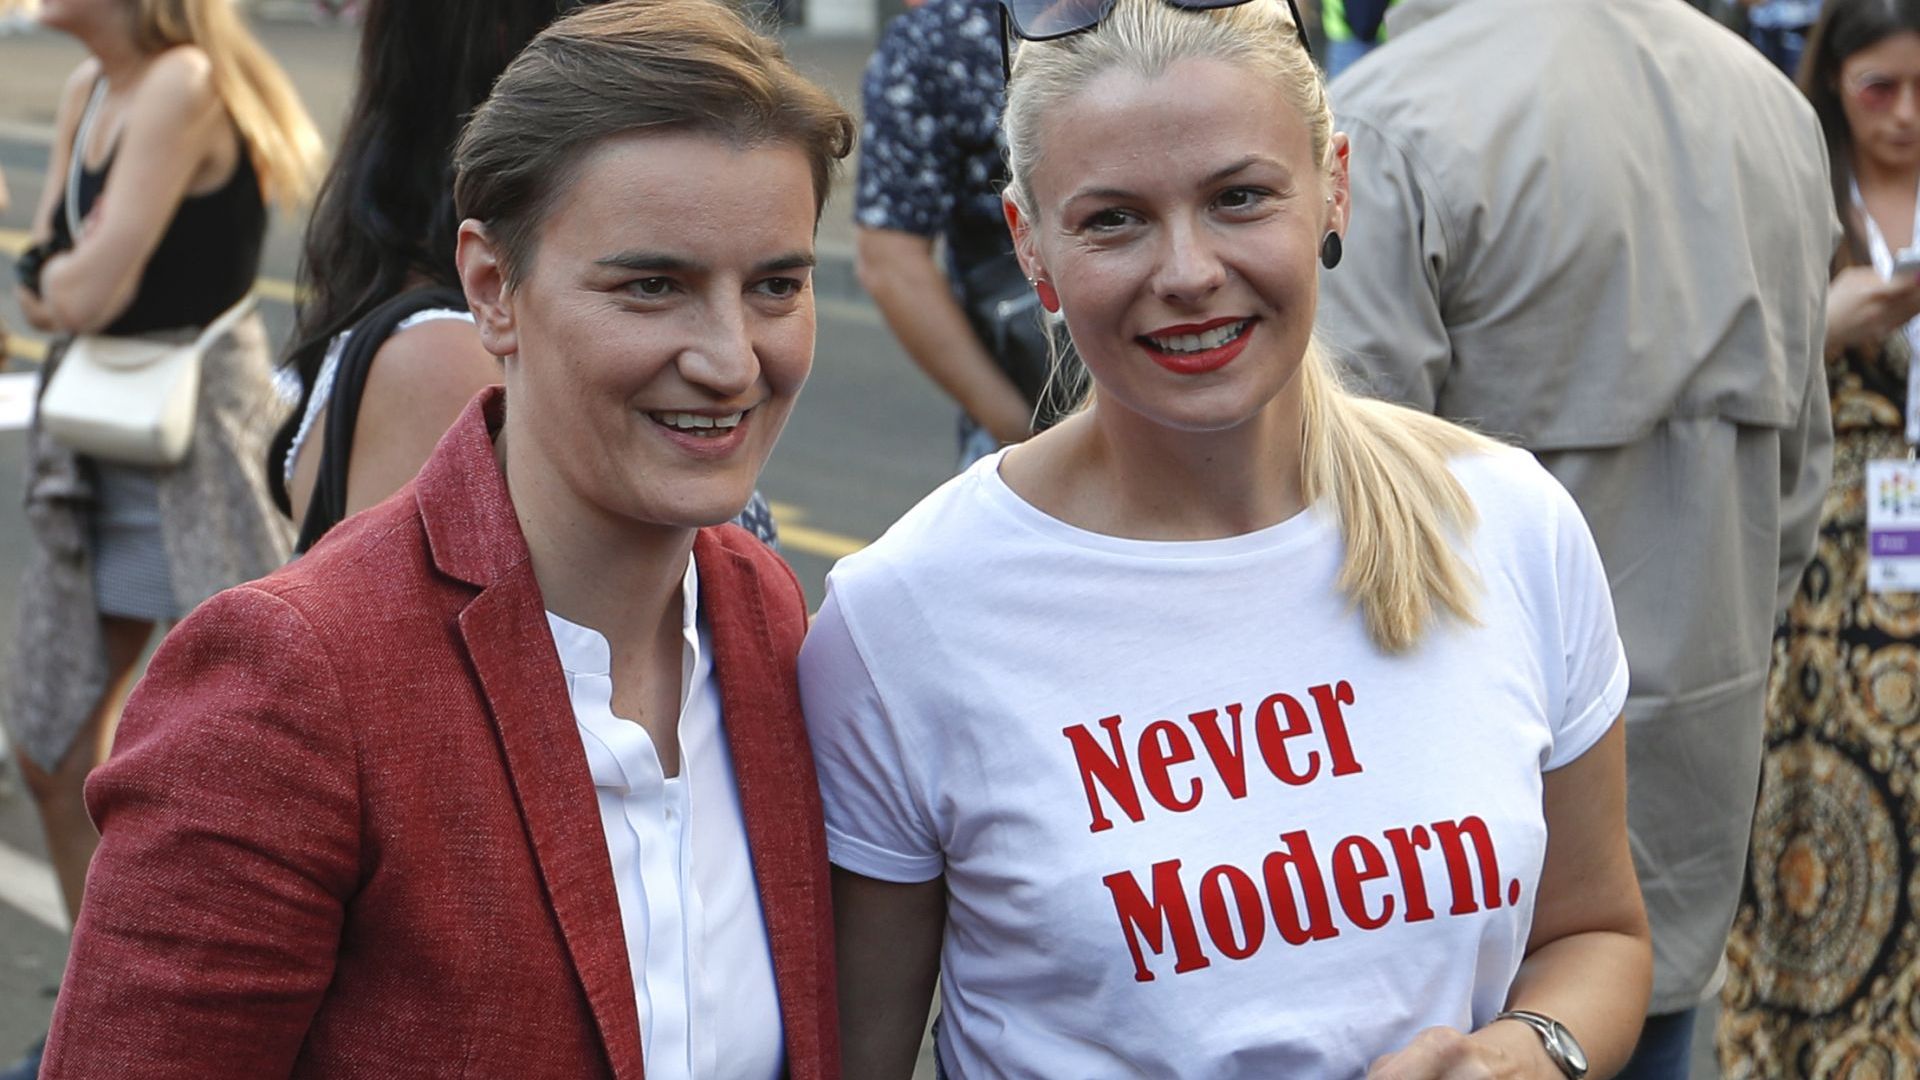 Започна гей парадът в Белград, сред присъстващите са и премиерът Ана Бърнабич и партньорката й